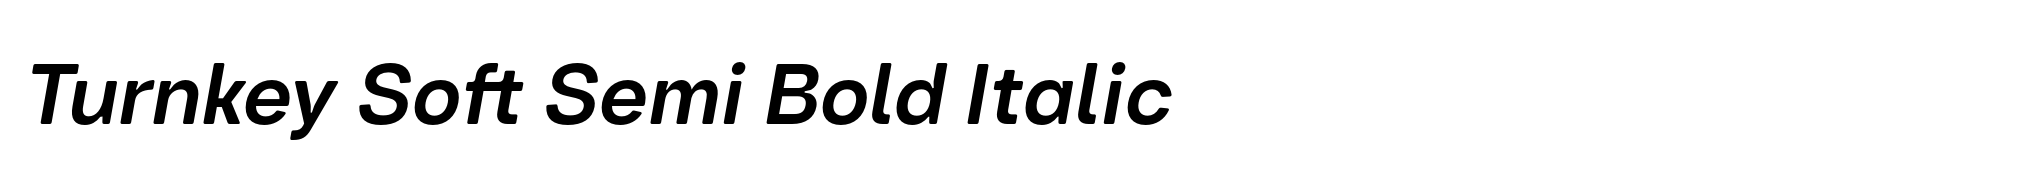 Turnkey Soft Semi Bold Italic image